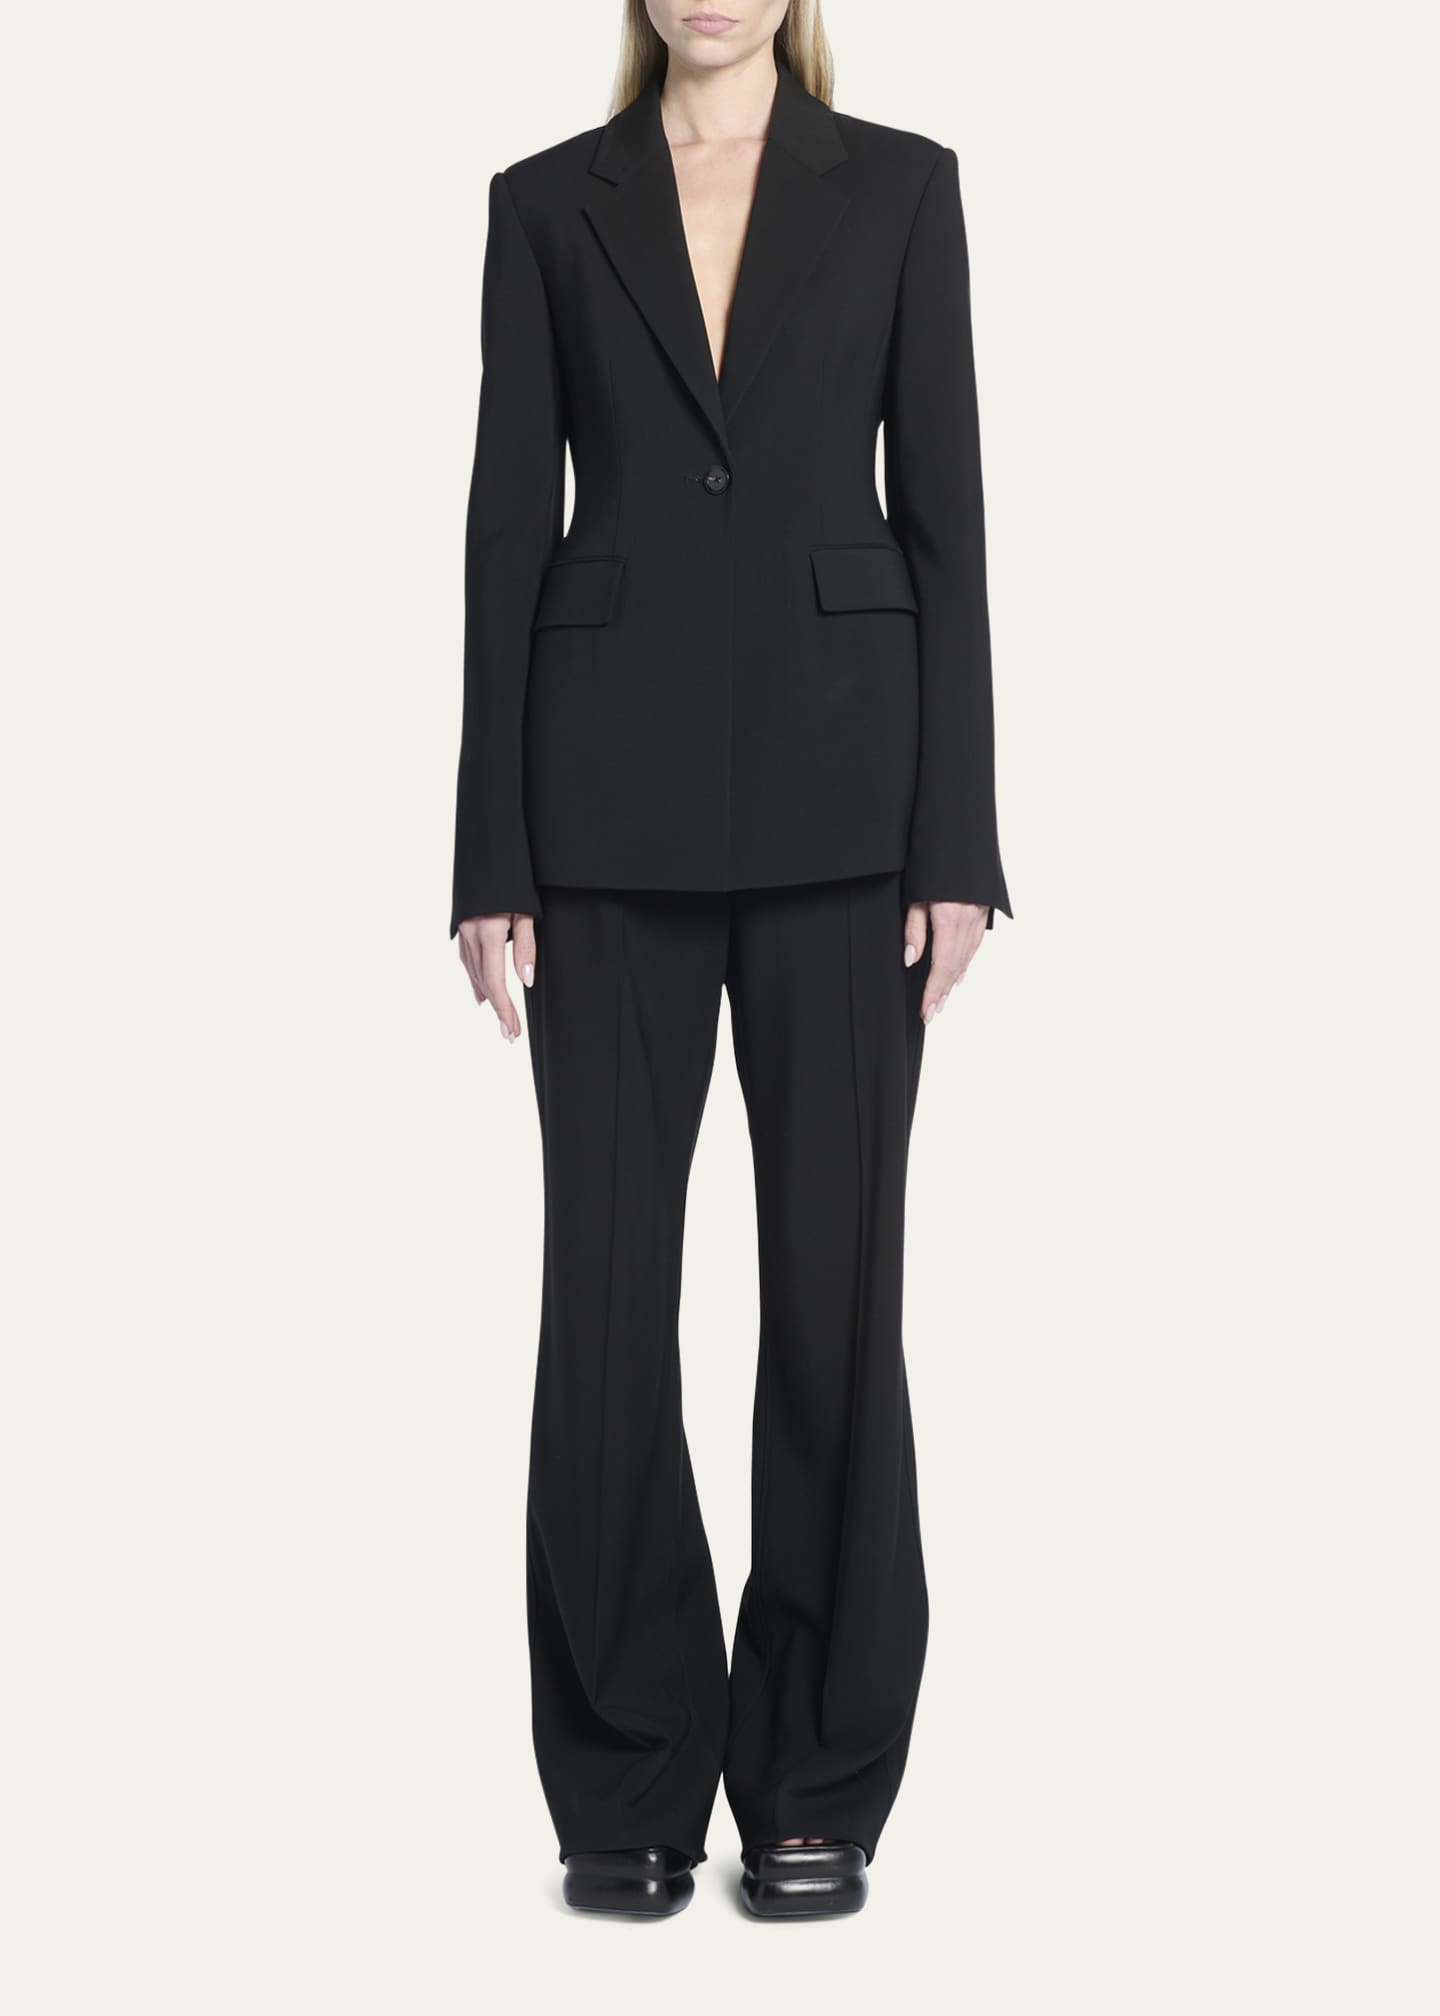 Proenza Schouler Viscose Suiting Jacket - Bergdorf Goodman